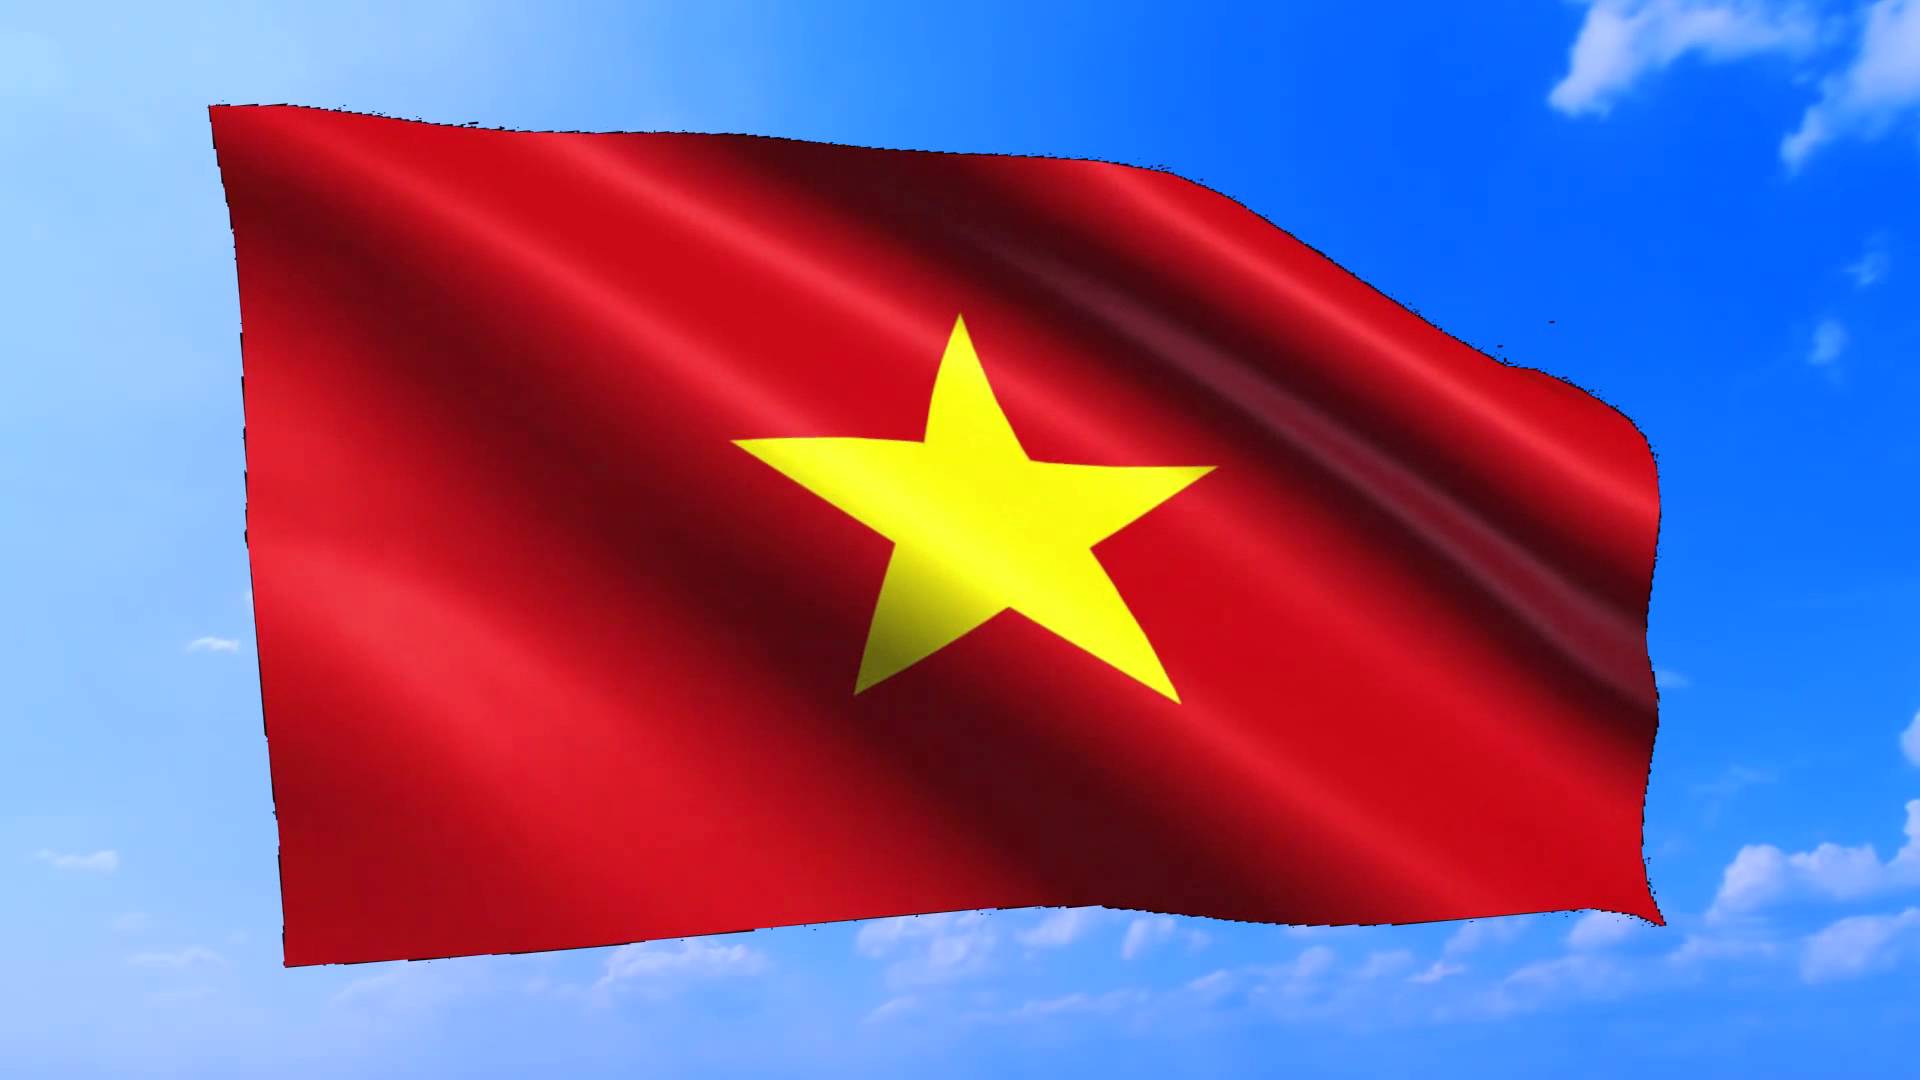 Nếu bạn là một người yêu thích Việt Nam, thì không thể bỏ qua một bức ảnh về lá cờ Việt Nam. Với những màu sắc tươi sáng và nét vẽ tinh tế, ảnh việt nam flag sẽ khiến bạn cảm thấy tự hào về quốc gia của mình.